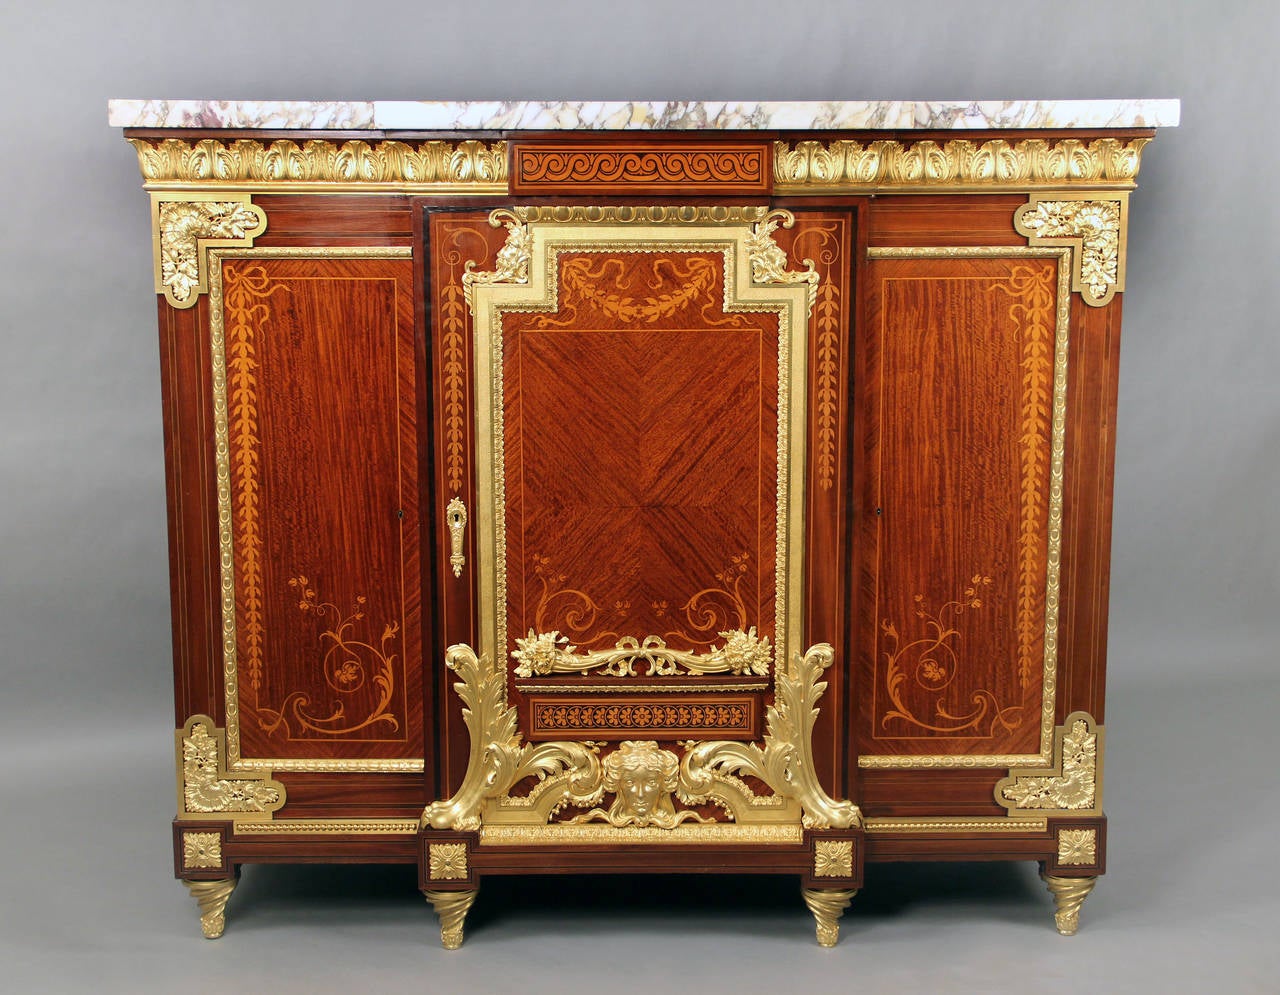 Rare et somptueux cabinet de style Louis XVI de la fin du XIXe siècle, monté en bronze doré et en marqueterie.

Un lourd plateau de marbre surmontant une frise de bronze et trois portes à panneaux décorées de marqueterie florale incrustée. La